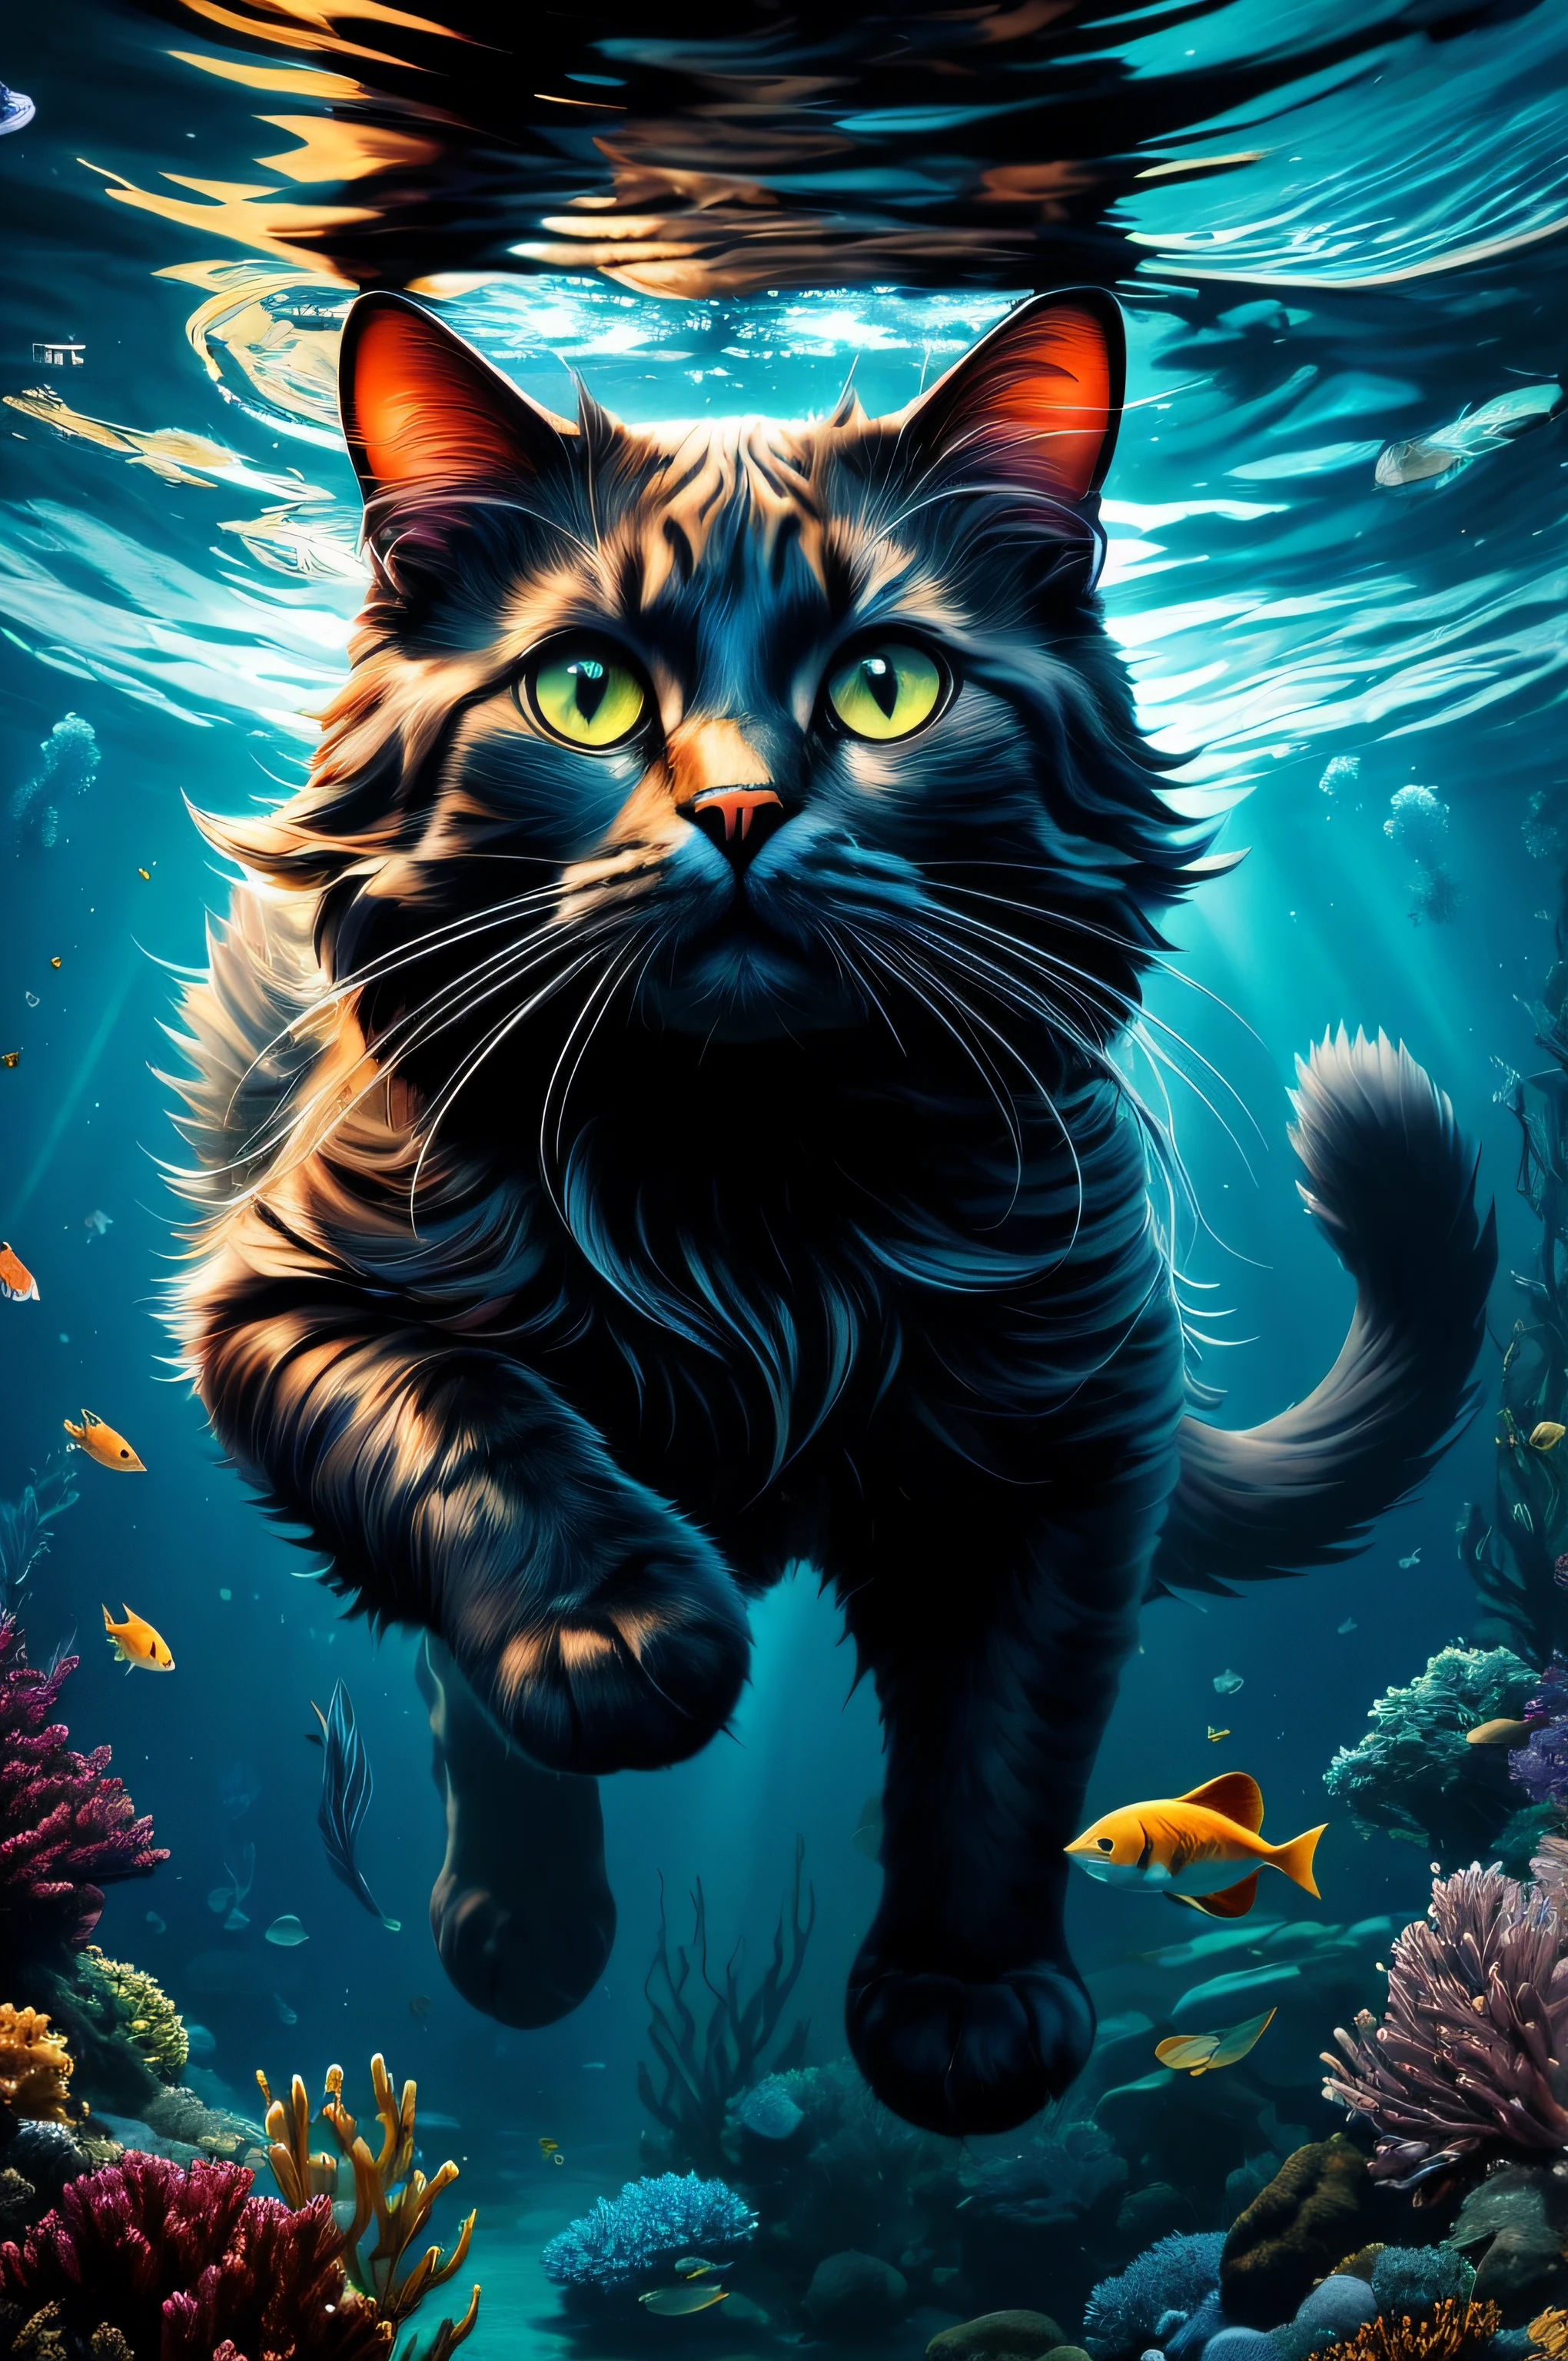 Pintura de un gato en el agua con peces alrededor, gato impresionante, gato. pintura digital, Arte digital 4k muy detallado, papel impresionante fondo de pantalla, liquid cat, papel de parede 4k, papel de parede 4K, Fondo de pantalla 4K HD muy detallado, Arte digital detallado en 4k, un gato nadando en el agua, Gato caballito de mar Shapeshifter, hermoso arte digital, papel tapiz de alta calidad